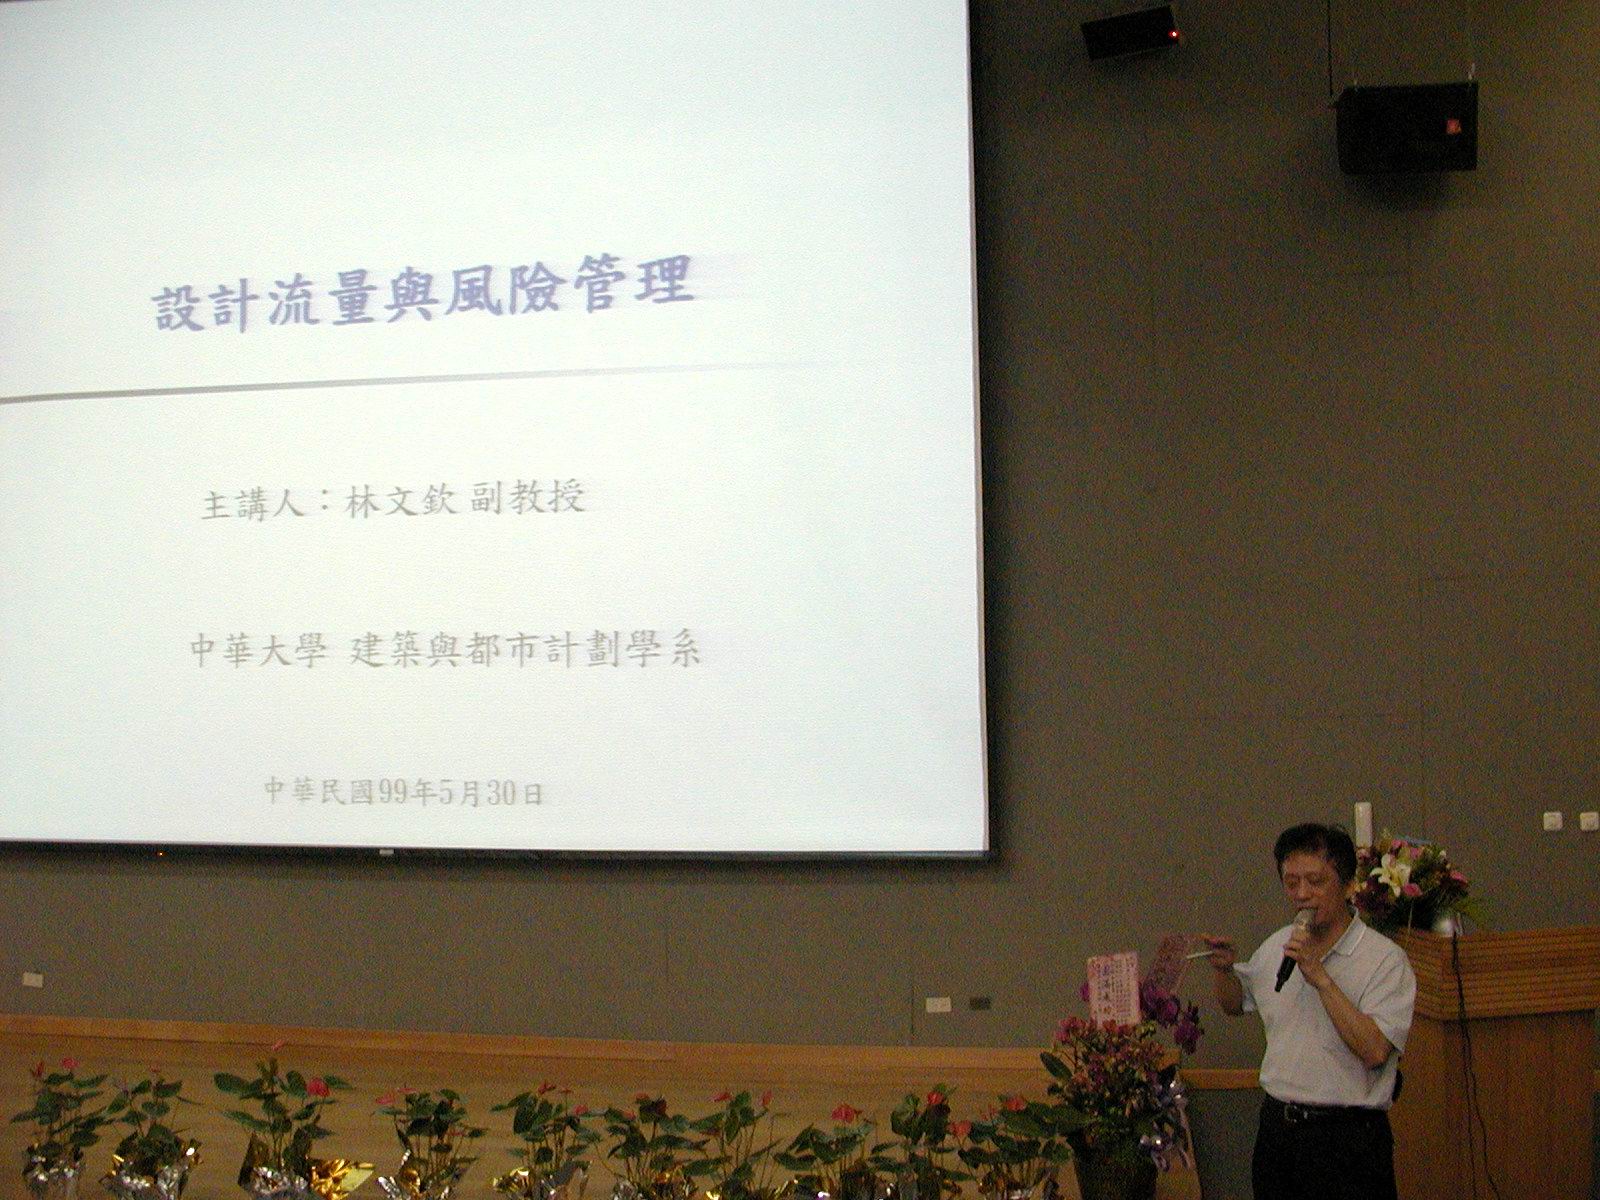 水利工程技術研討會-中華大學林文欽教授演講